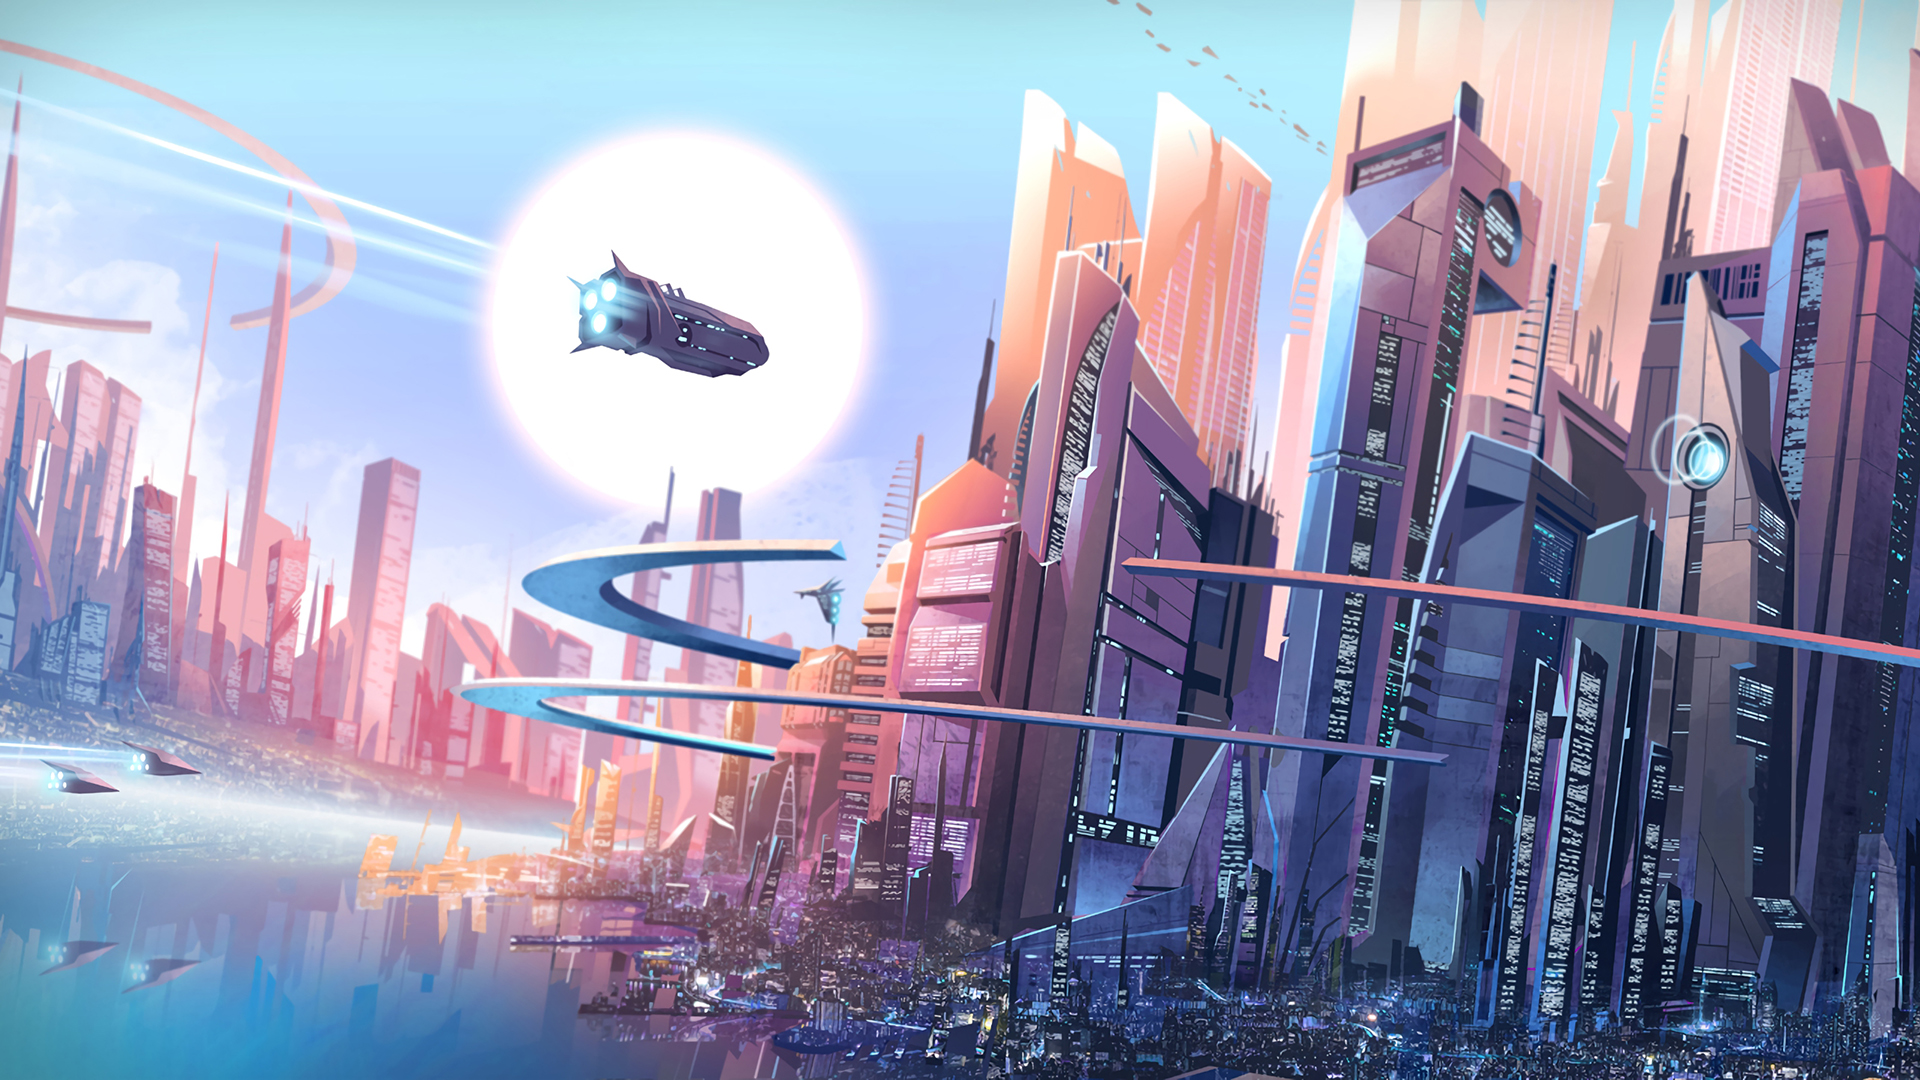 Download mobile wallpaper Sun, City, Skyscraper, Building, Sci Fi, Futuristic City for free.